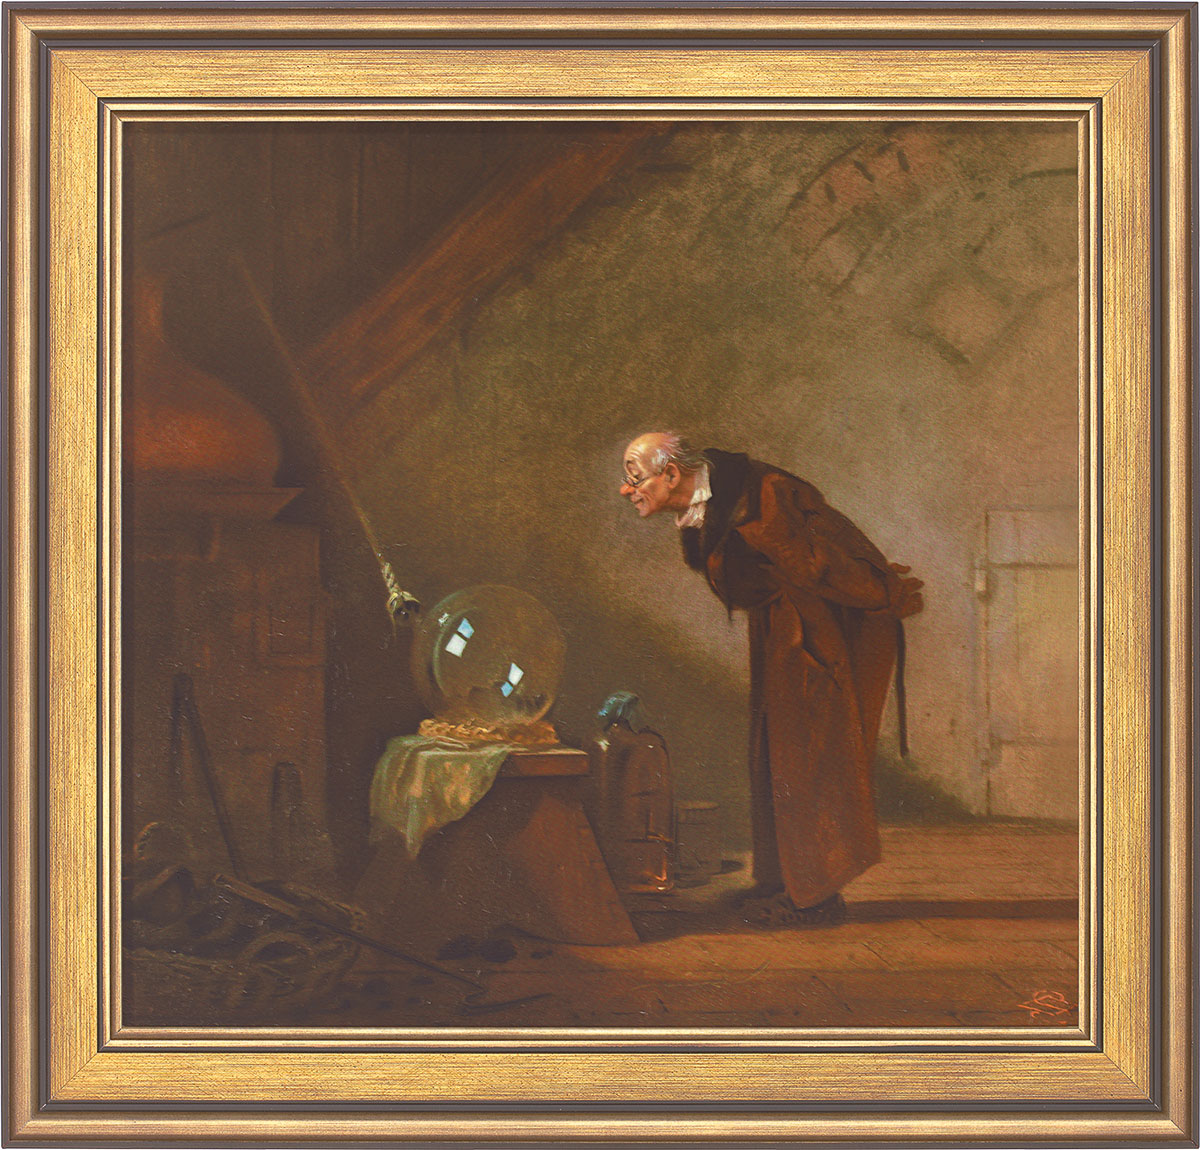 Carl Spitzweg: Bild 'Der Alchimist' (1860), gerahmt